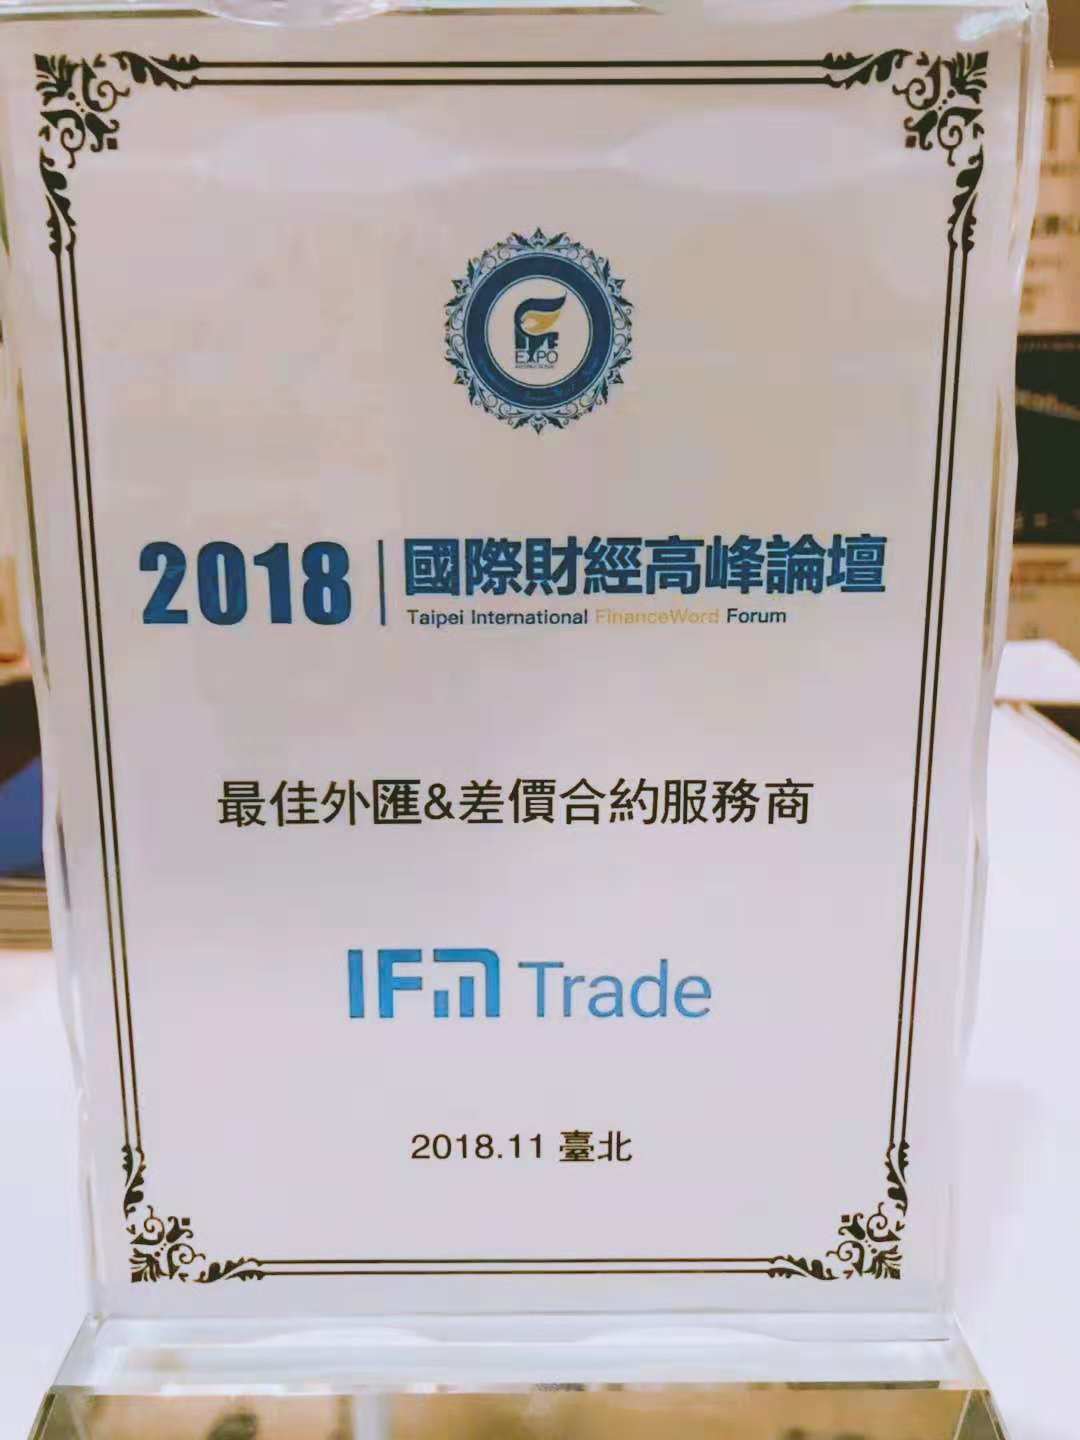 IFM Trade 亮相台北 荣获“最佳金融衍生品&差价合约服务商”